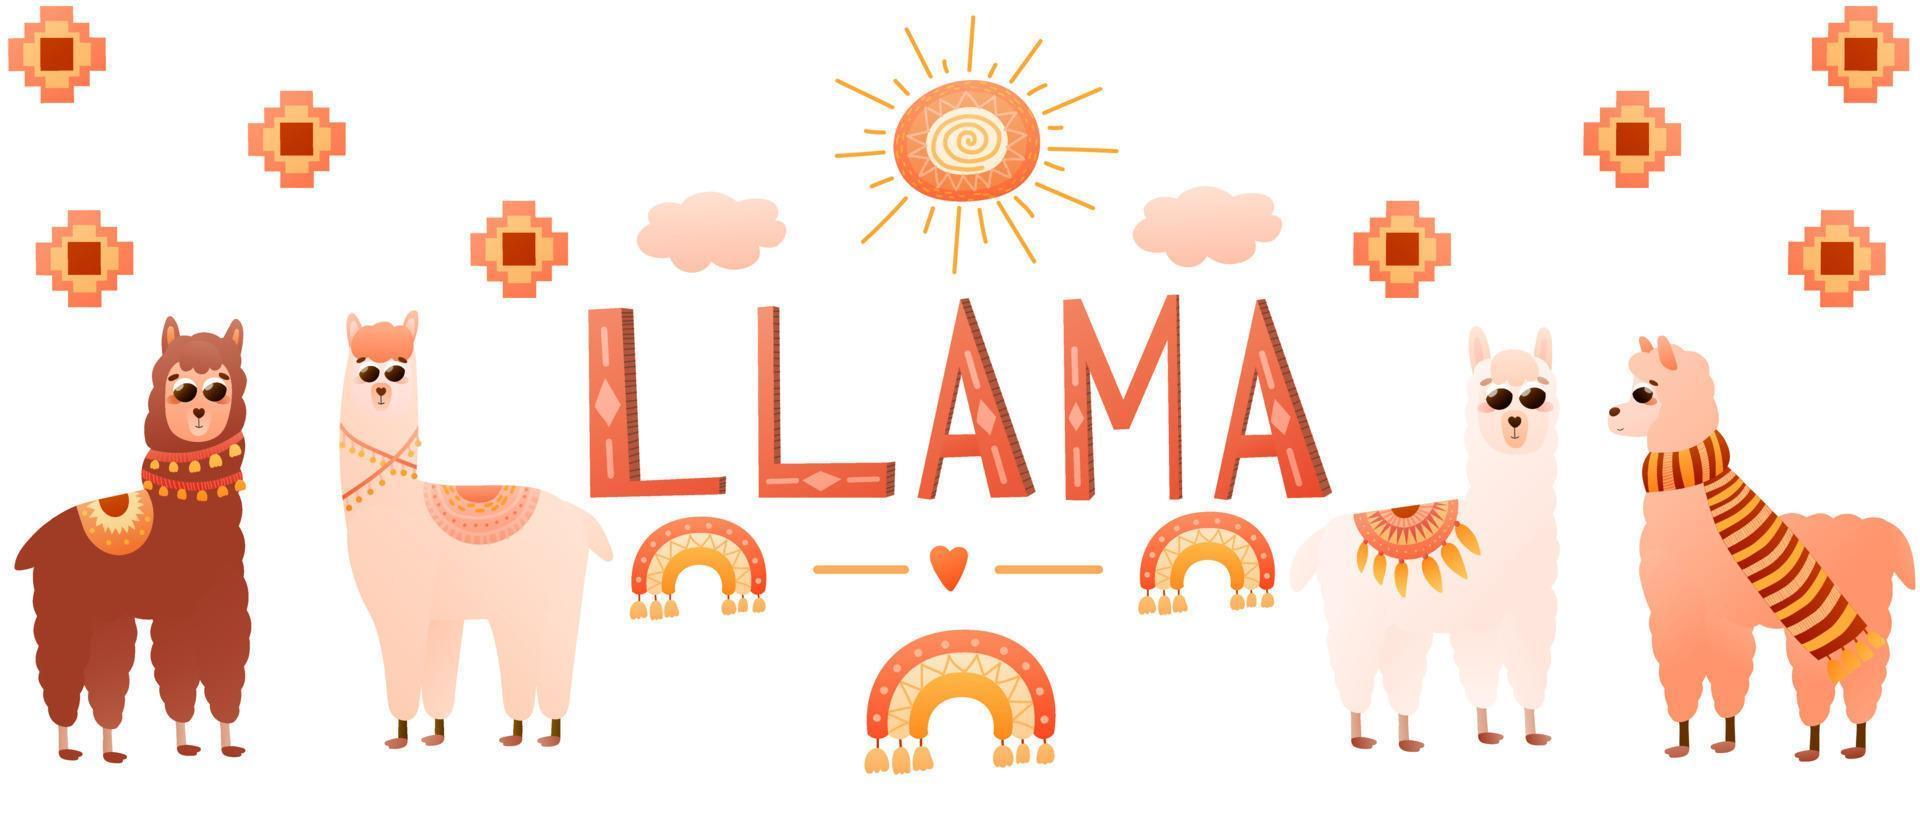 banner web de alpacas con personajes animales de estilo de dibujos animados elementos de llama y perú, diseño de afiches coloridos con adornos tribales en estilo escandinavo vector